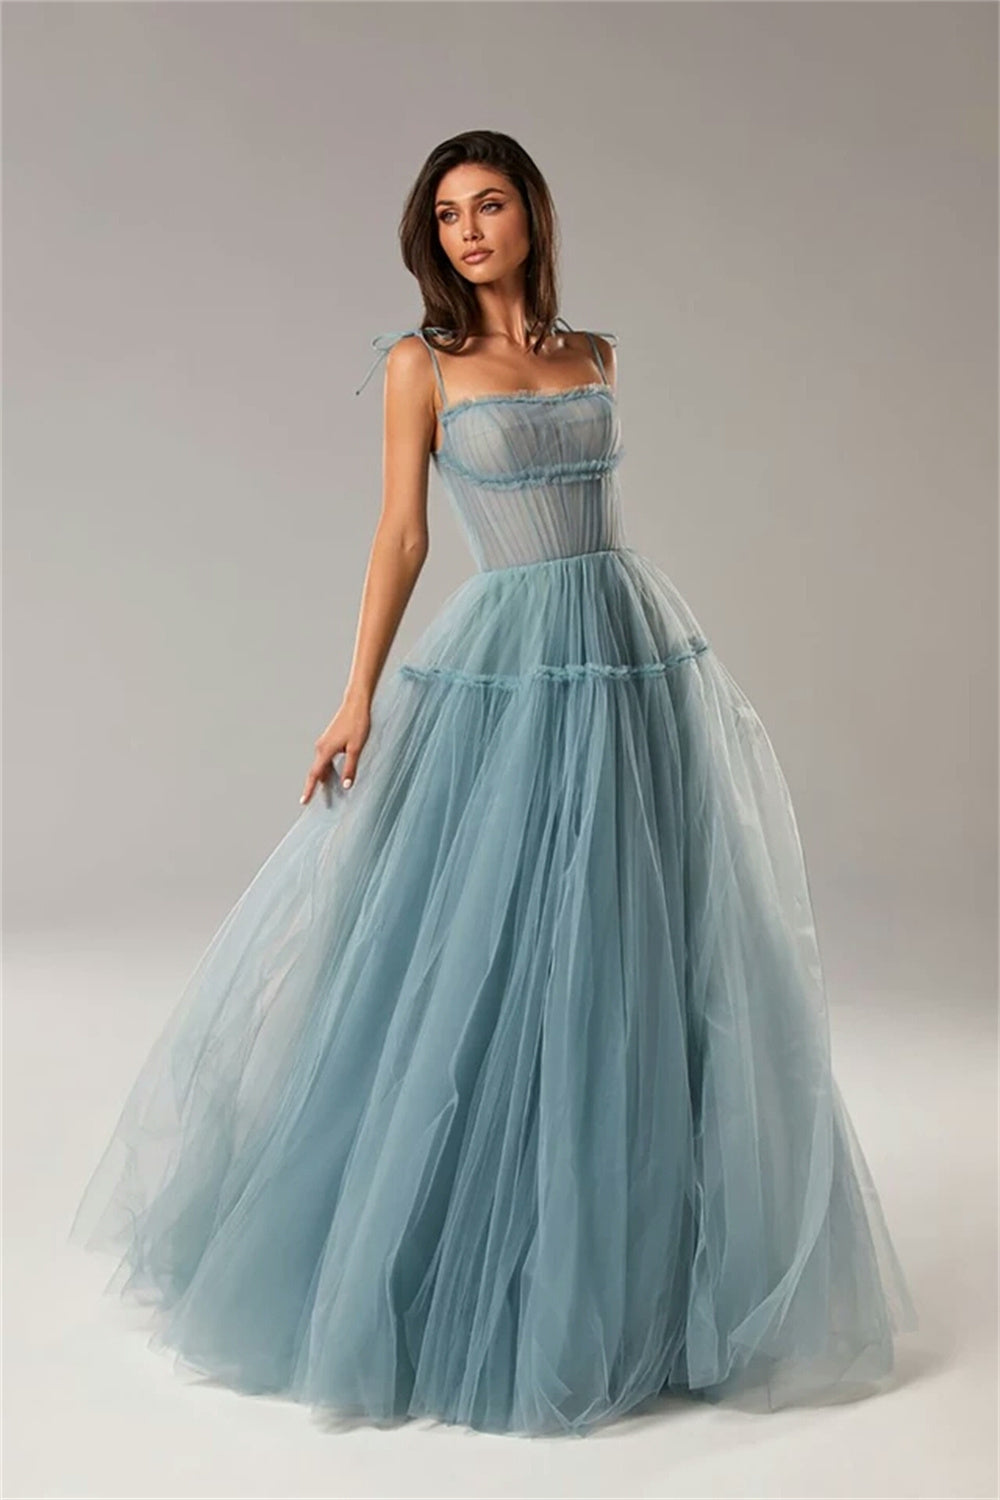 SARKA Formal Couture Dress  Perfect Maxi Dress